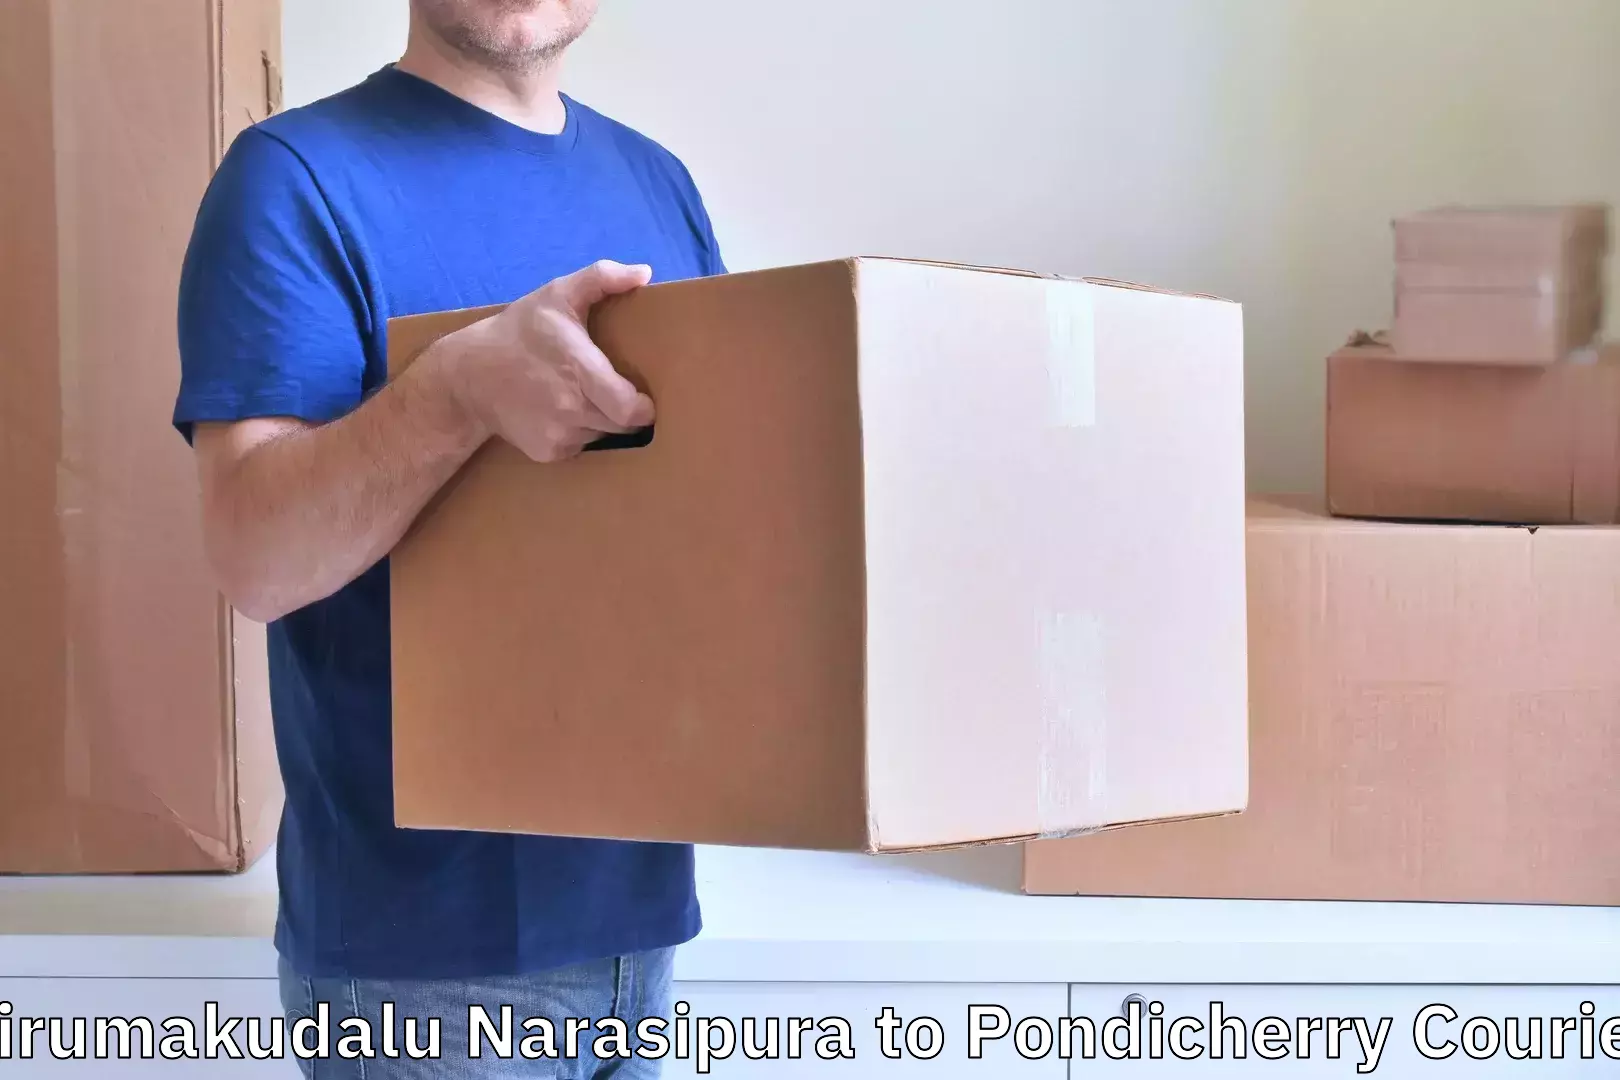 Baggage delivery optimization Tirumakudalu Narasipura to NIT Puducherry